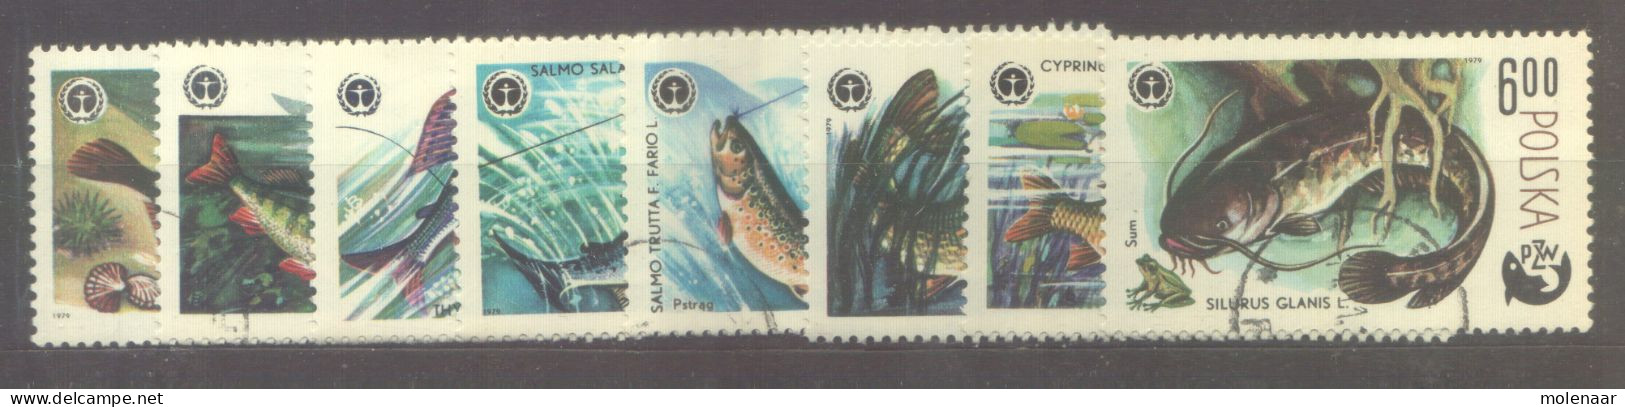 Postzegels > Europa > Polen > 1944-.... Republiek > 1971-80 > Gebruikt  2617-2624 (12176) - Gebraucht